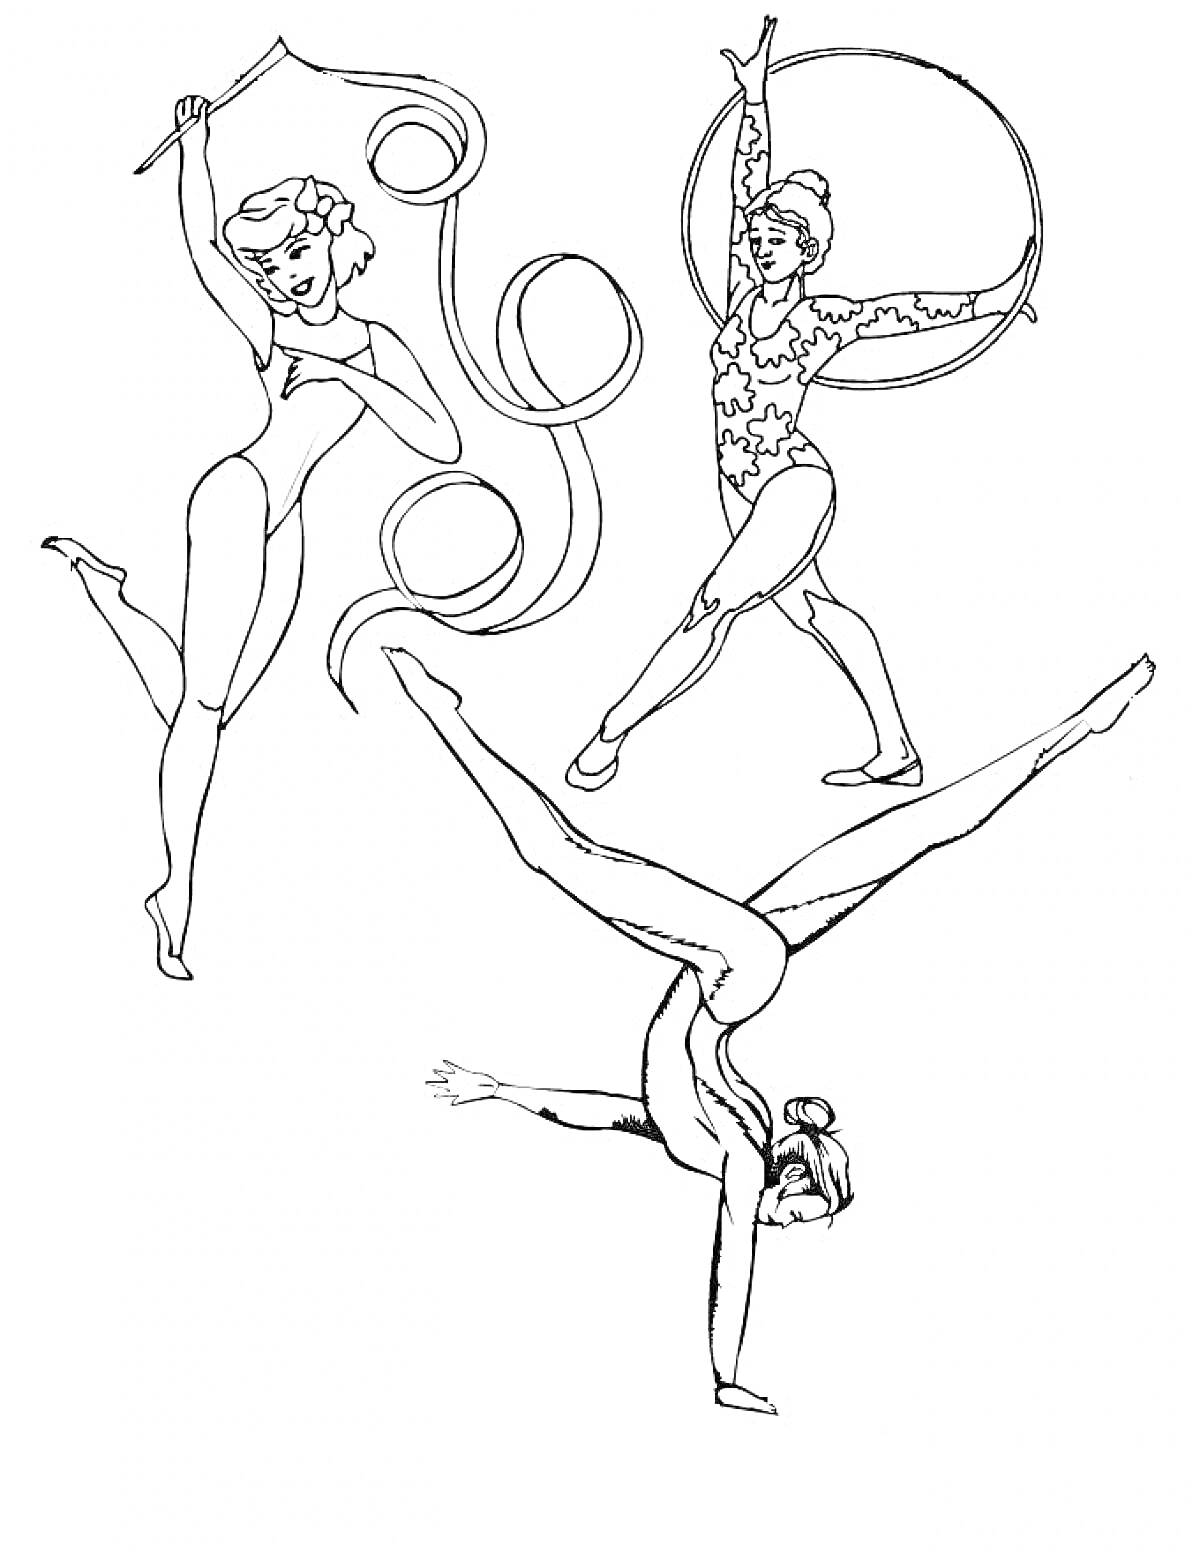  Гимнастки с ленточкой, обручем и в стойке на руках